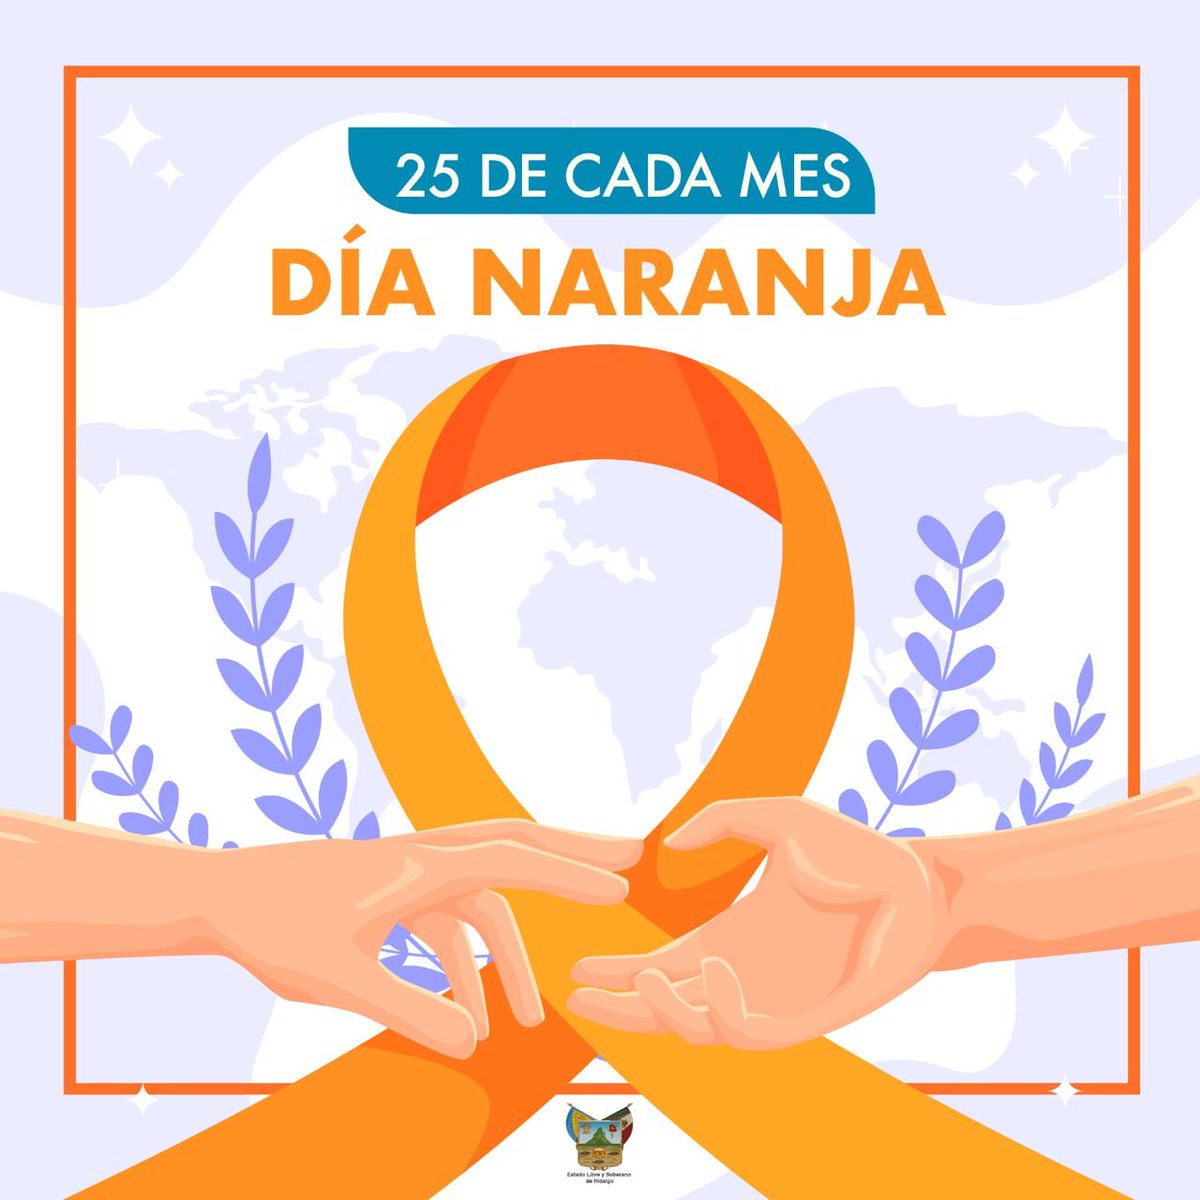 Hoy es #DíaNaranja 🧡 Un día para alzar la voz contra la violencia hacia mujeres y niñas. Únete a la causa y promueve la igualdad y el respeto en cada rincón de nuestra sociedad. Juntos, podemos construir un futuro libre de violencia.